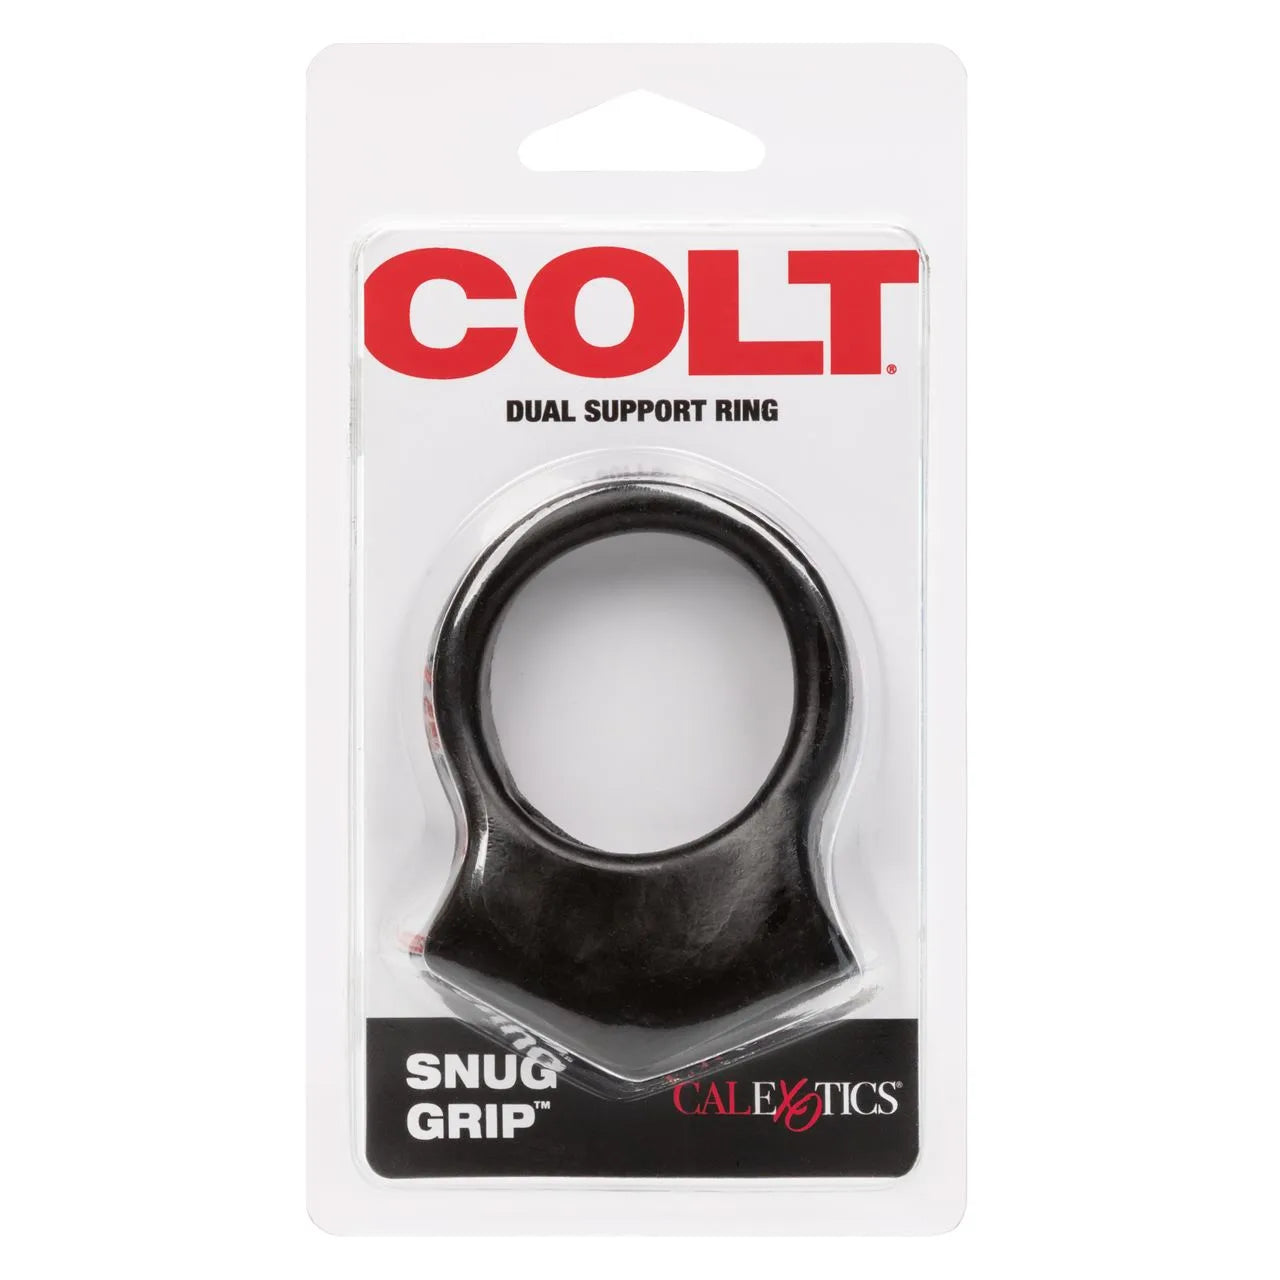 COLT Snug Grip